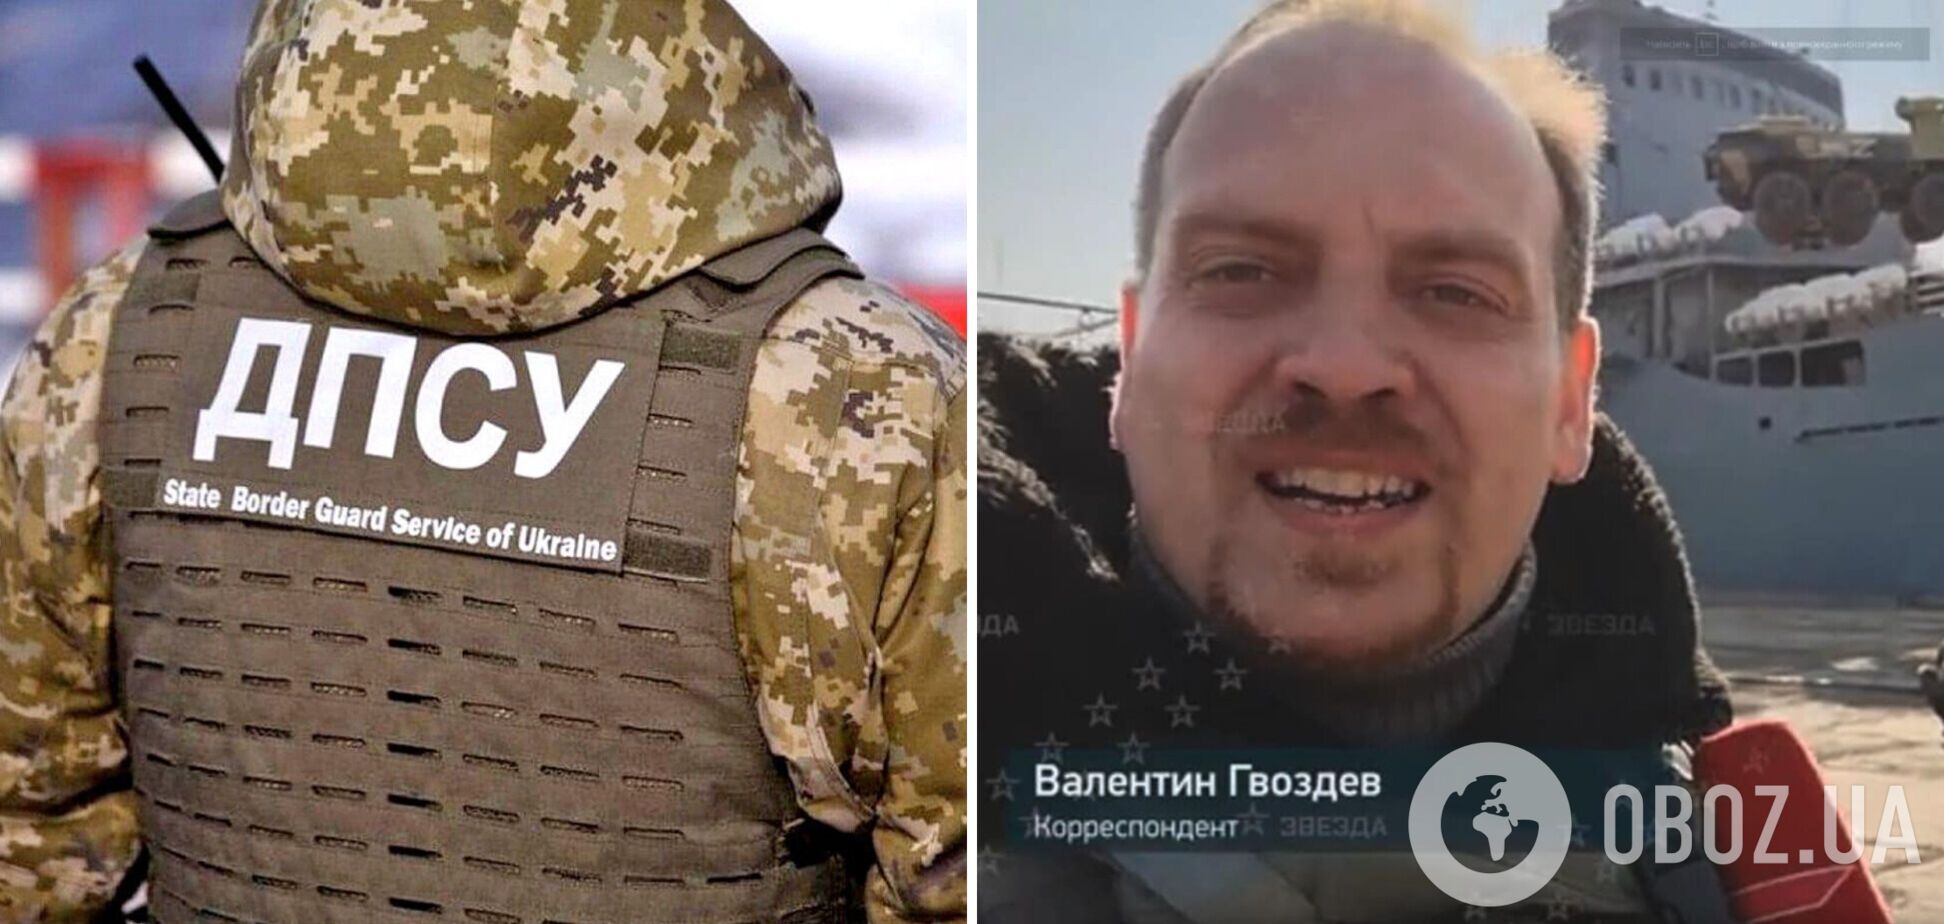 В Украине поблагодарили пропагандиста Путина, который 'помог' уничтожить корабль 'Орск'. Фото